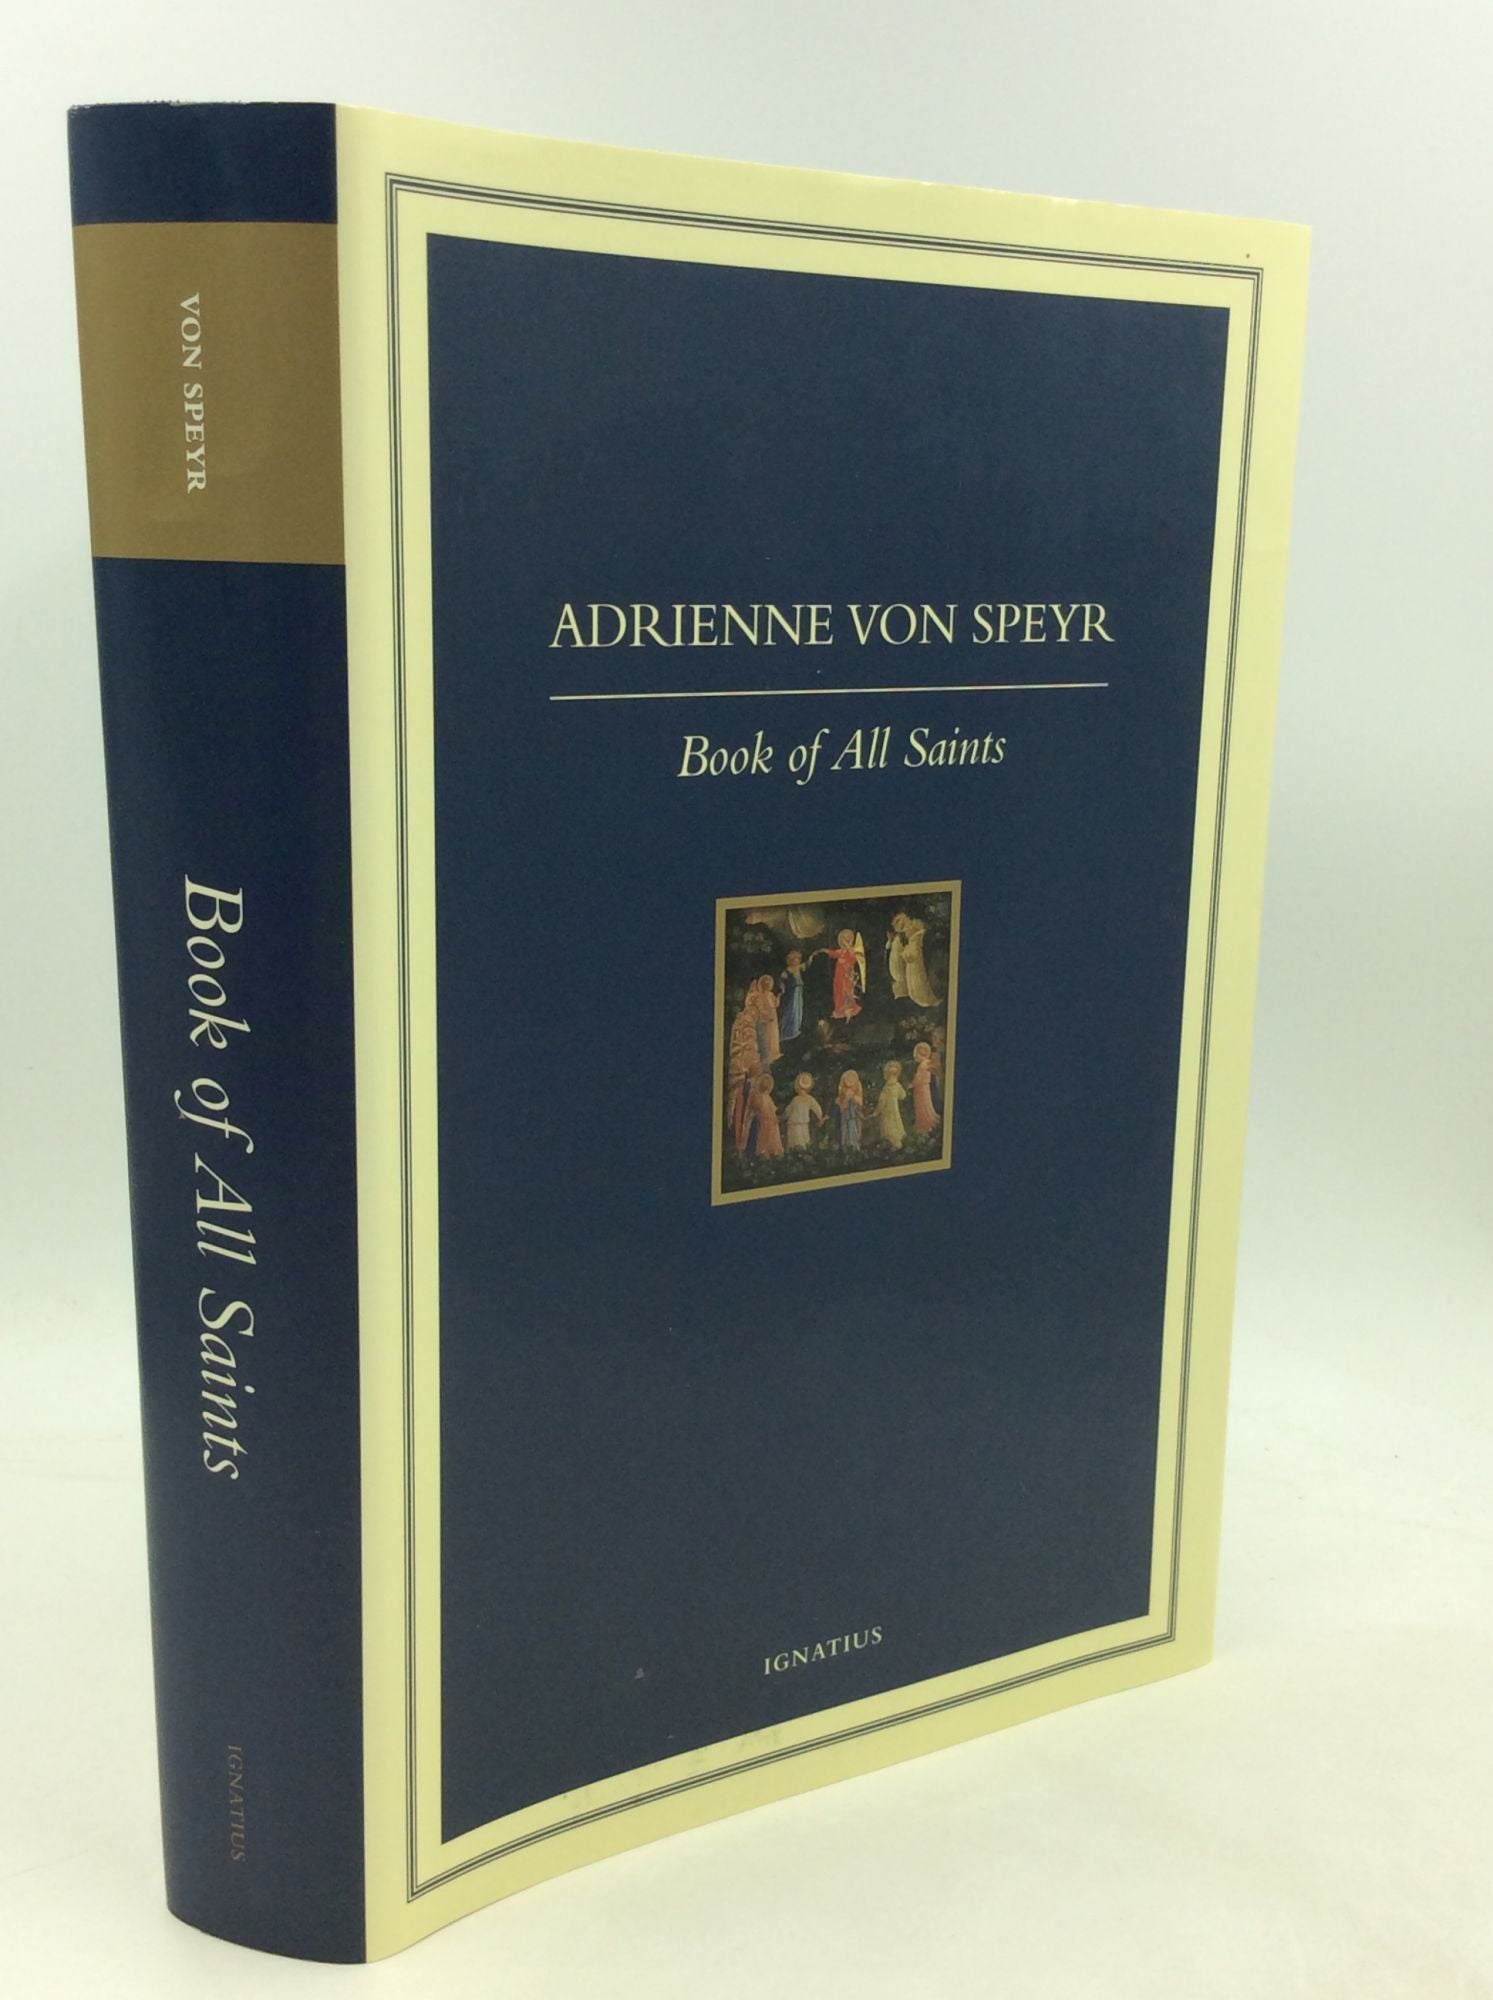 Adrienne von Speyr - The Book of All Saints, Part One